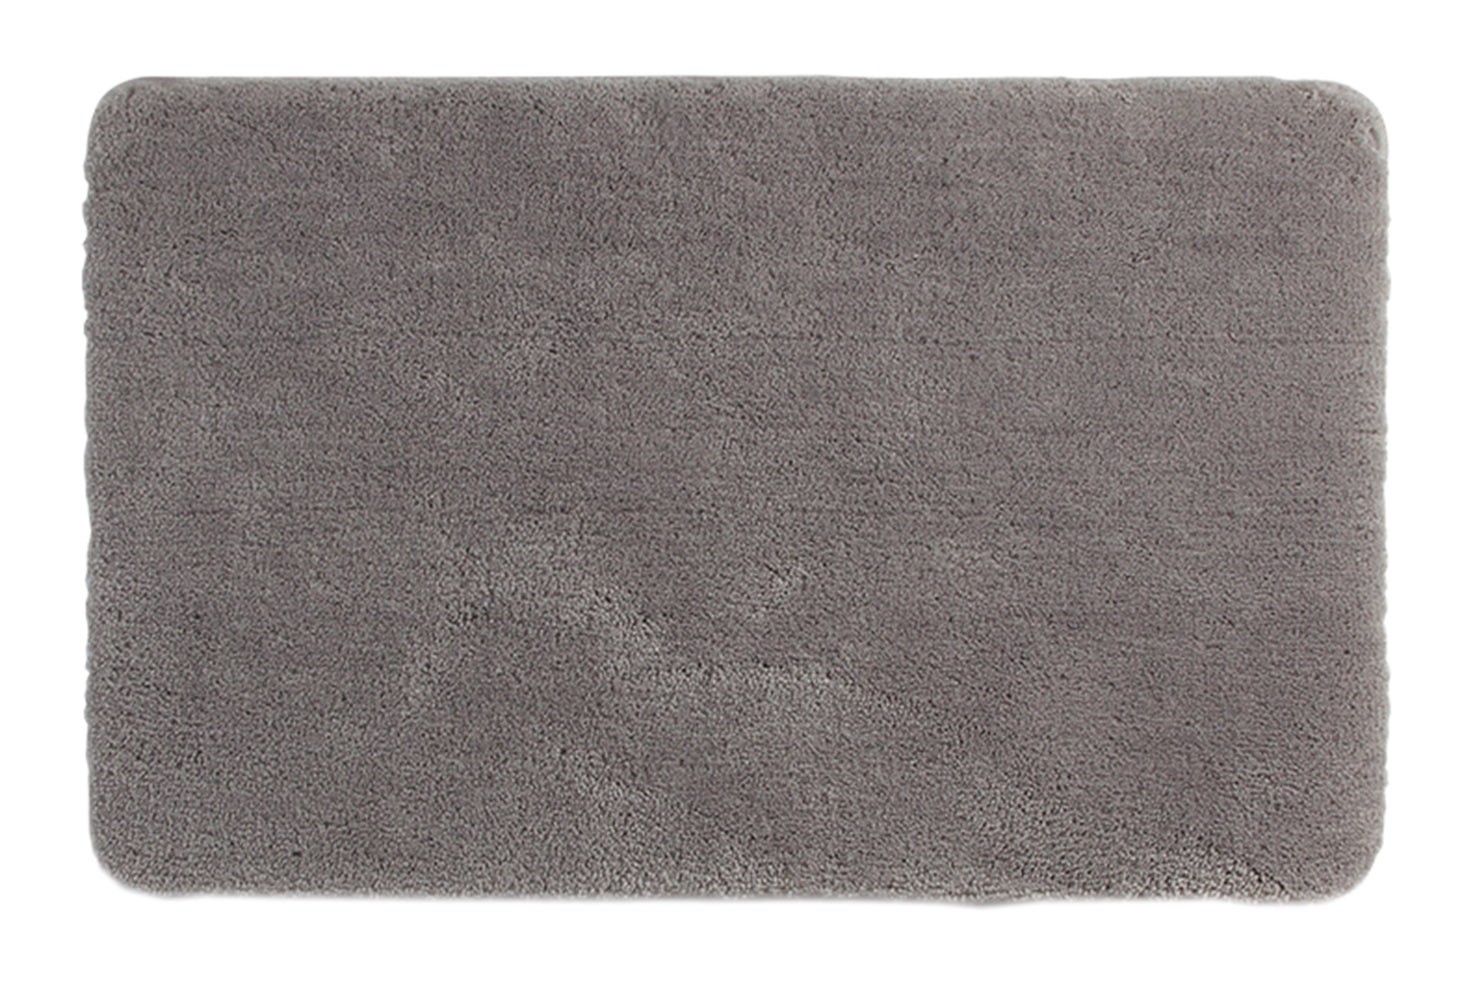 [Solid] Home Decor Rug Bathroom/Living Room Doormat Indoor/Outdoor Mat,Gray,15.75x23.62 inches